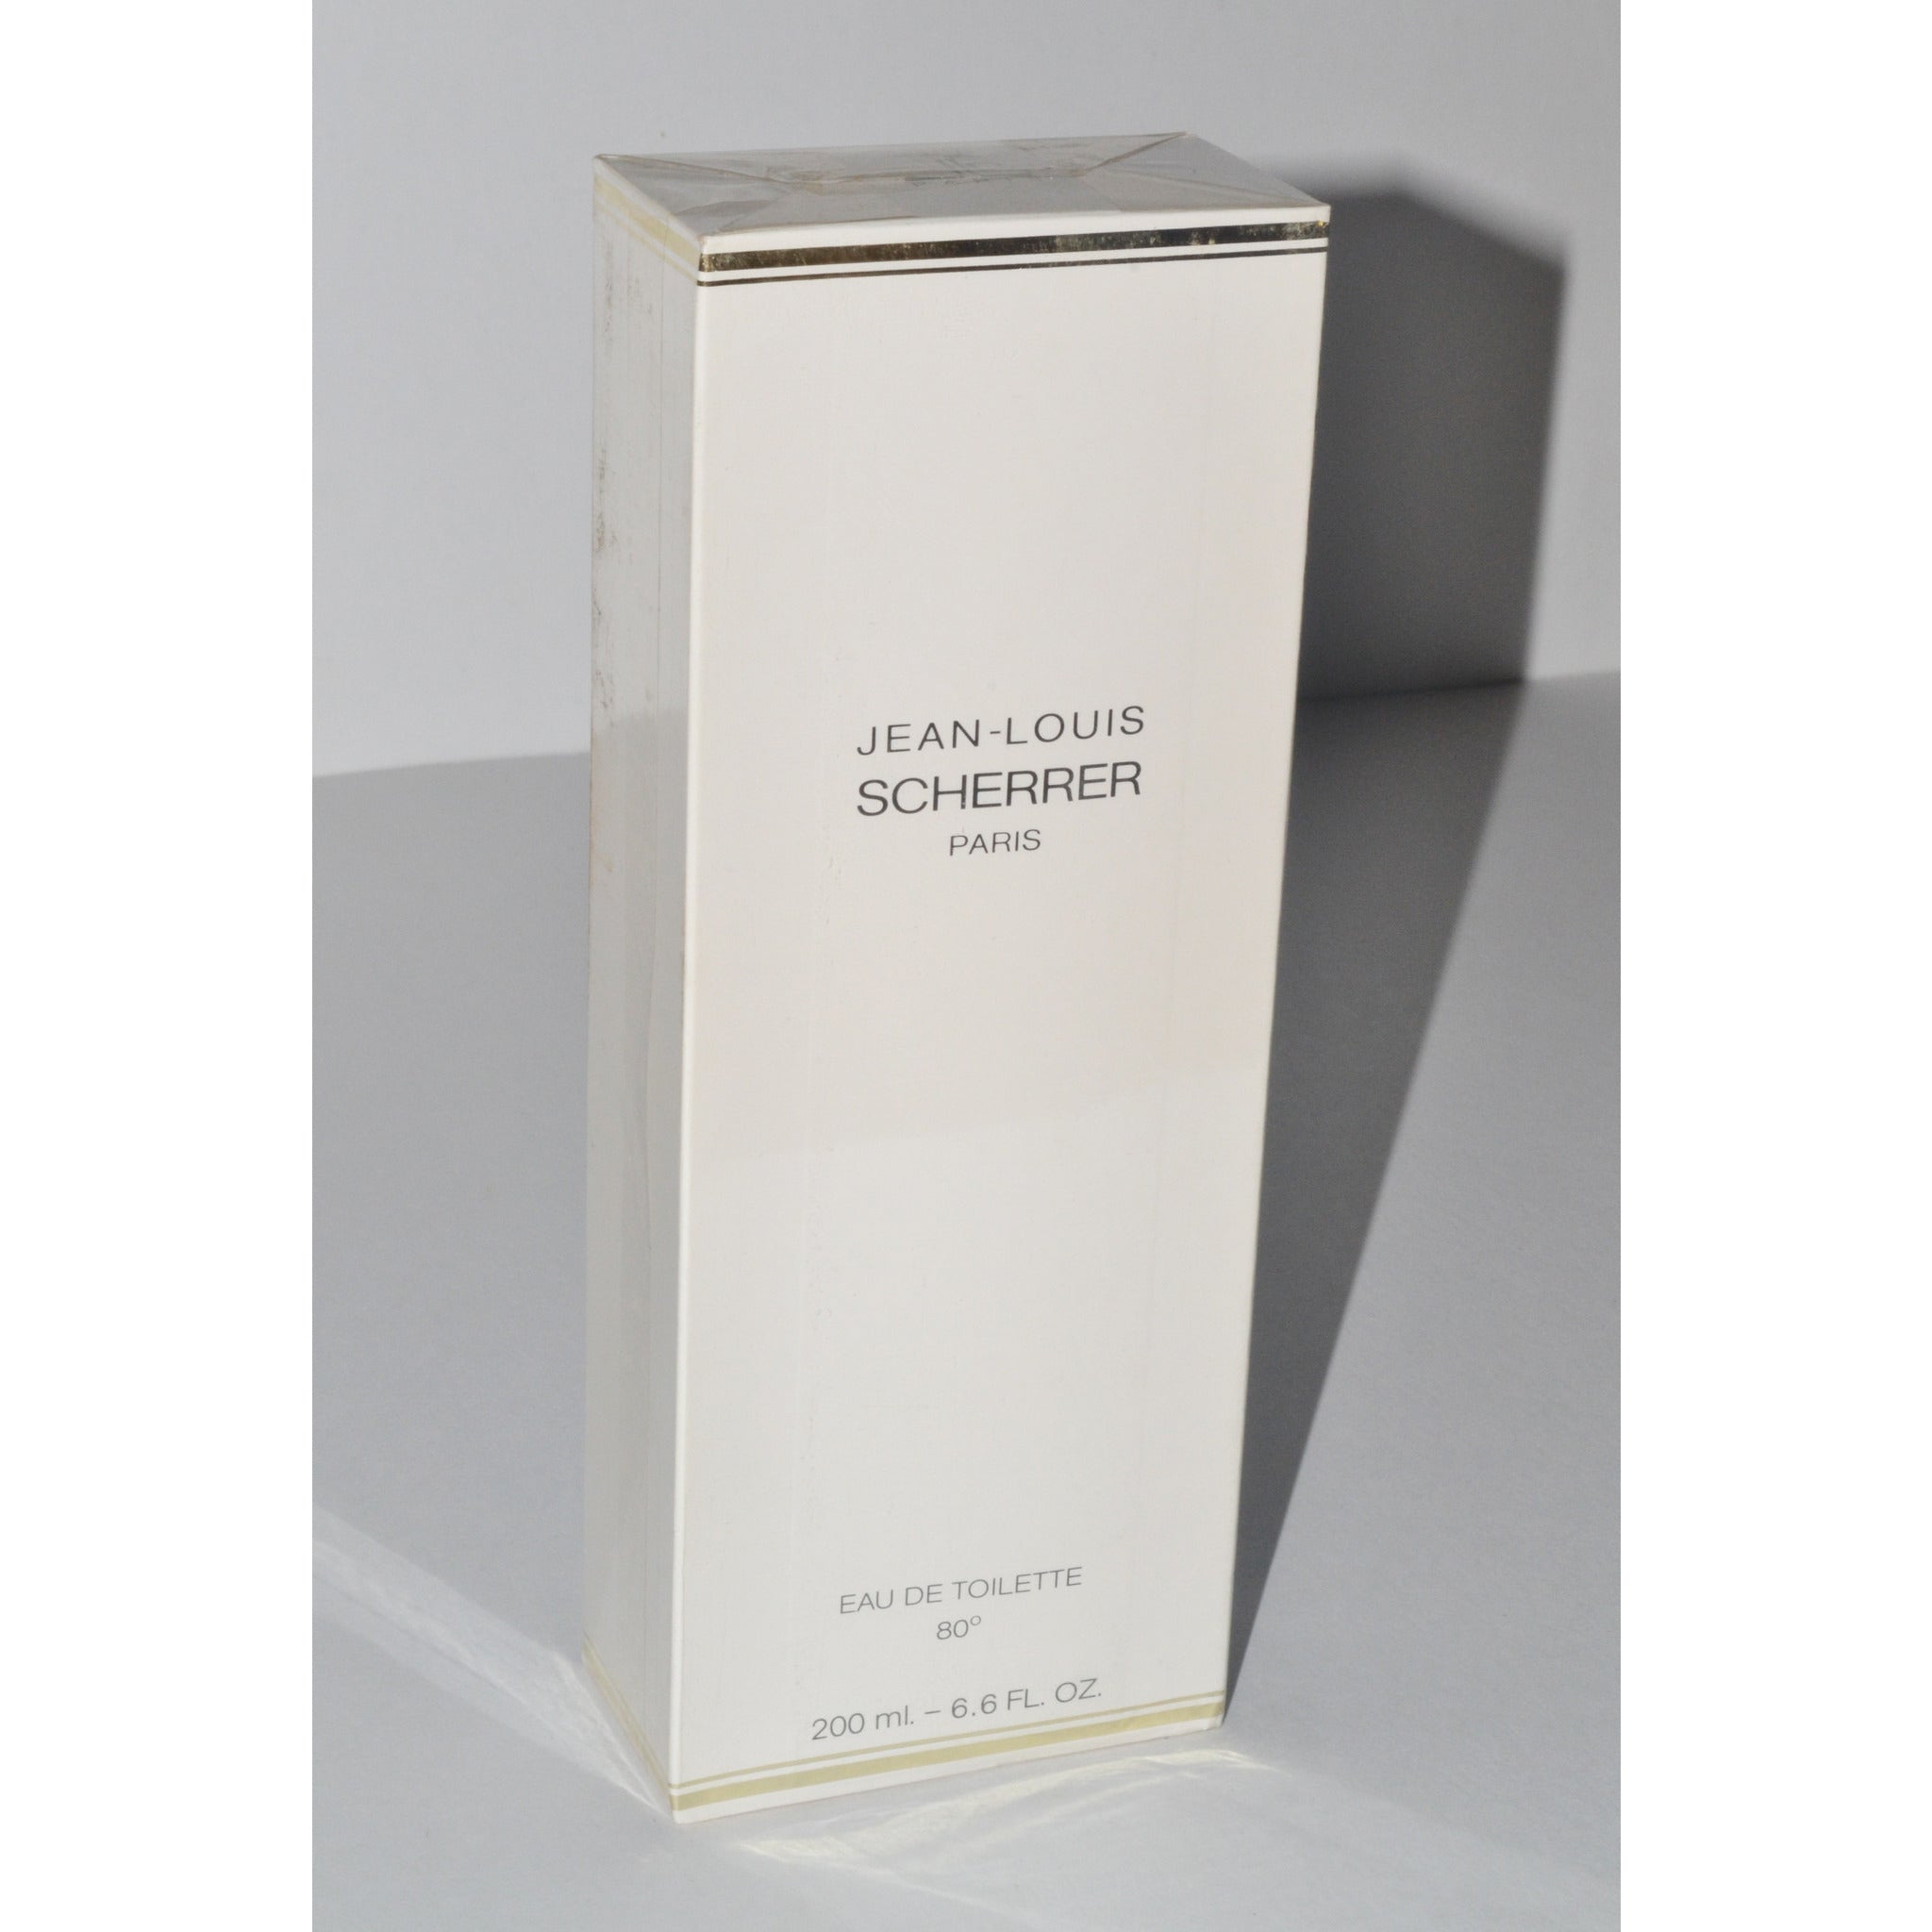 Vintage Scherrer Parfum By Jean-Louis Scherrer – Quirky Finds